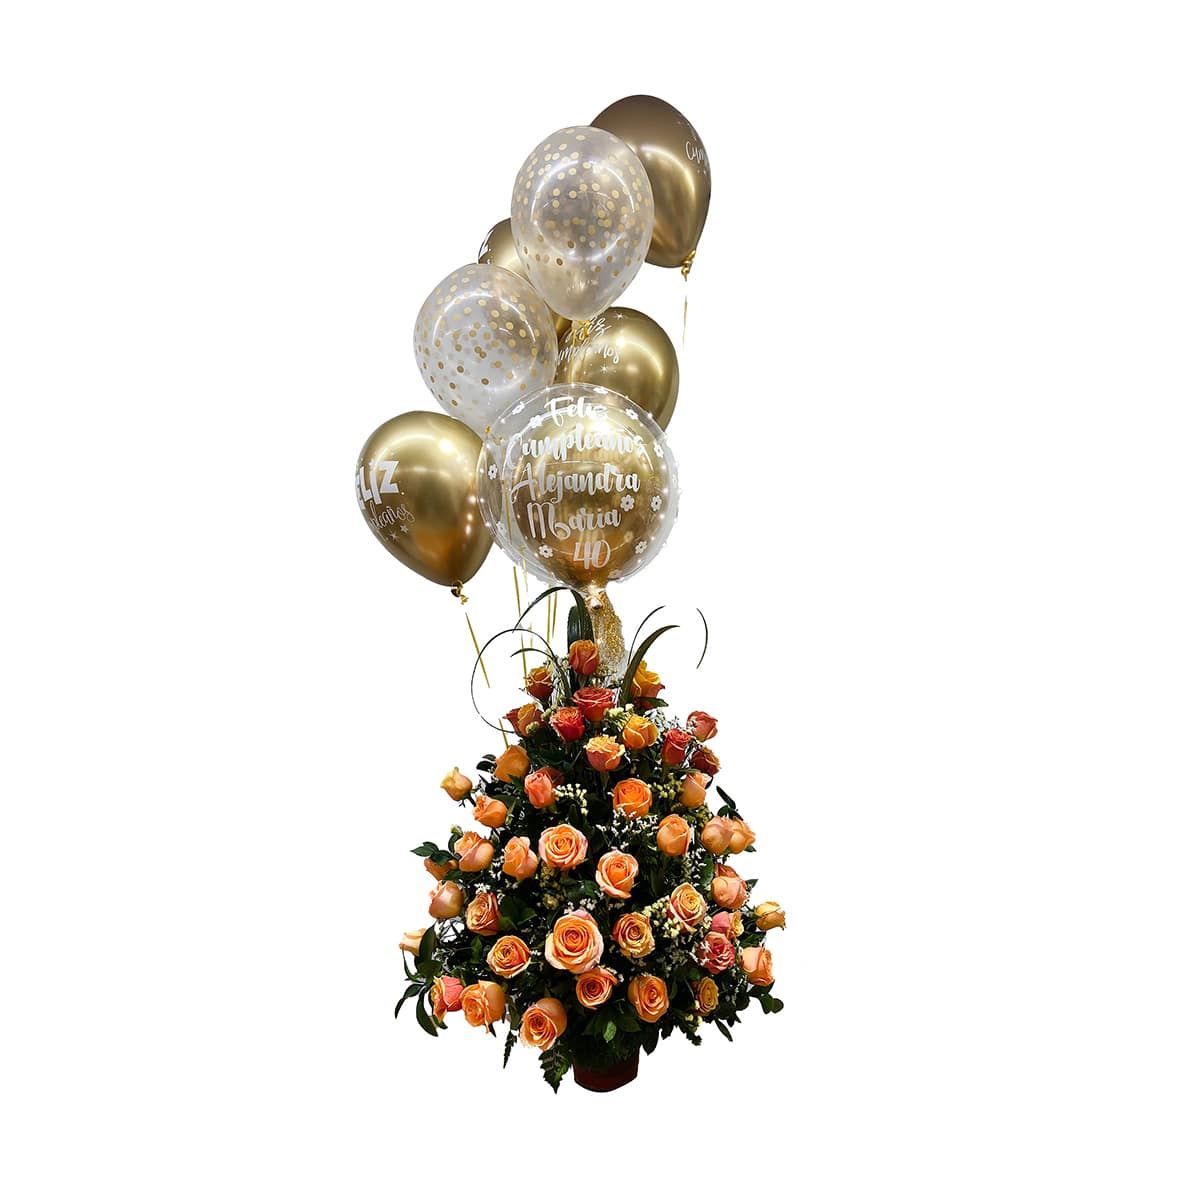 arreglo floral oro con globos